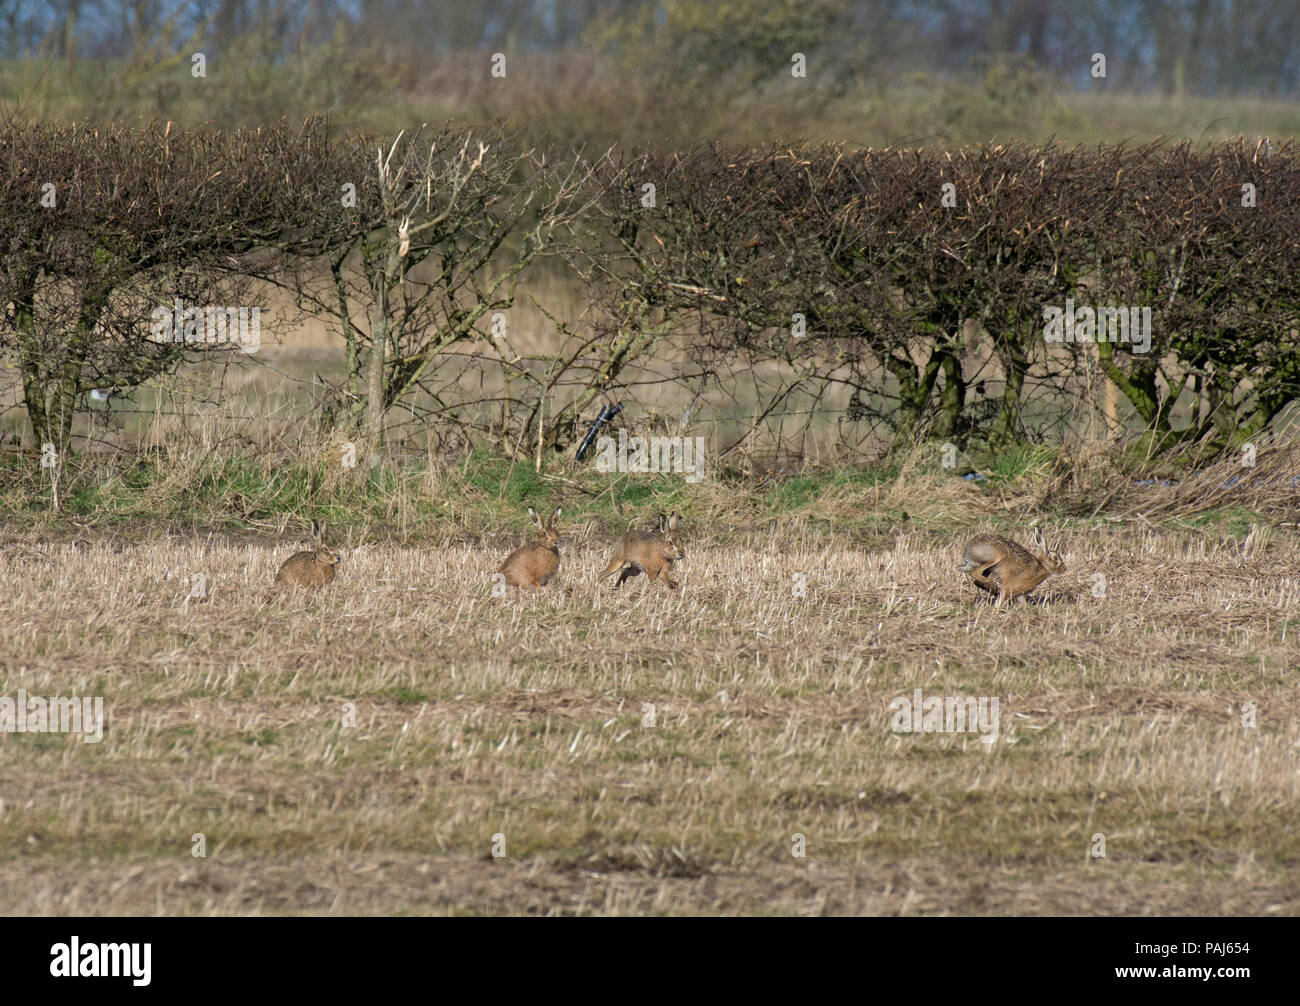 Quatre lièvres bruns d'Europe, Lepus europaeus, scampering à travers champ, Lancashire, UK Banque D'Images